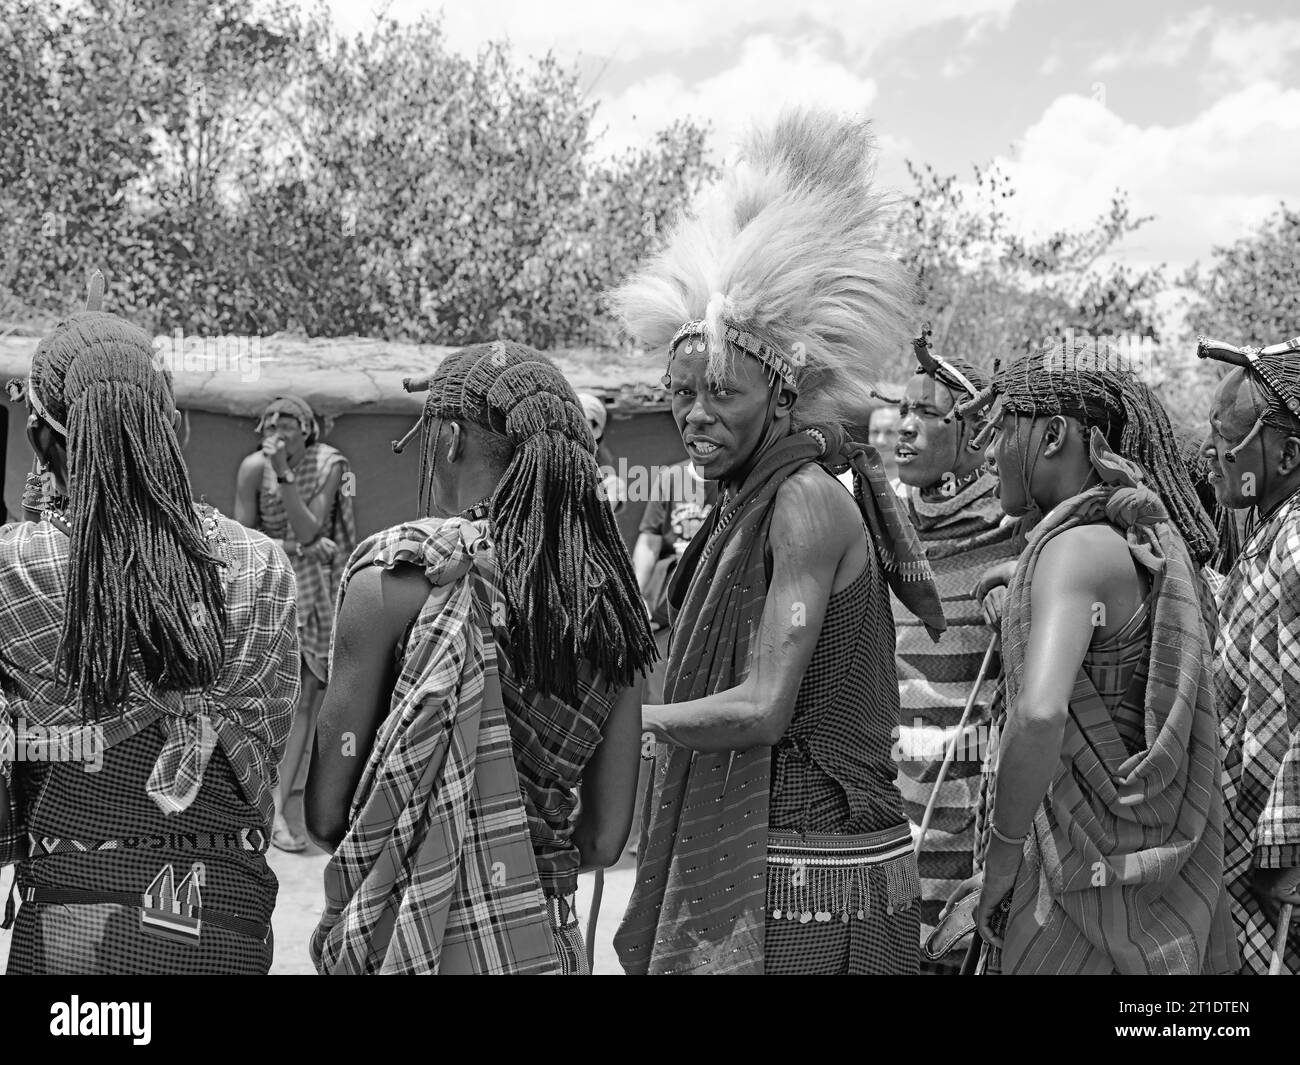 Stammesbewohner von Maasai Mara, Kenia, unterhalten die Besucher aus dem Ausland in ihr Dorf, während man sich dreht und in die Kamera schaut Stockfoto